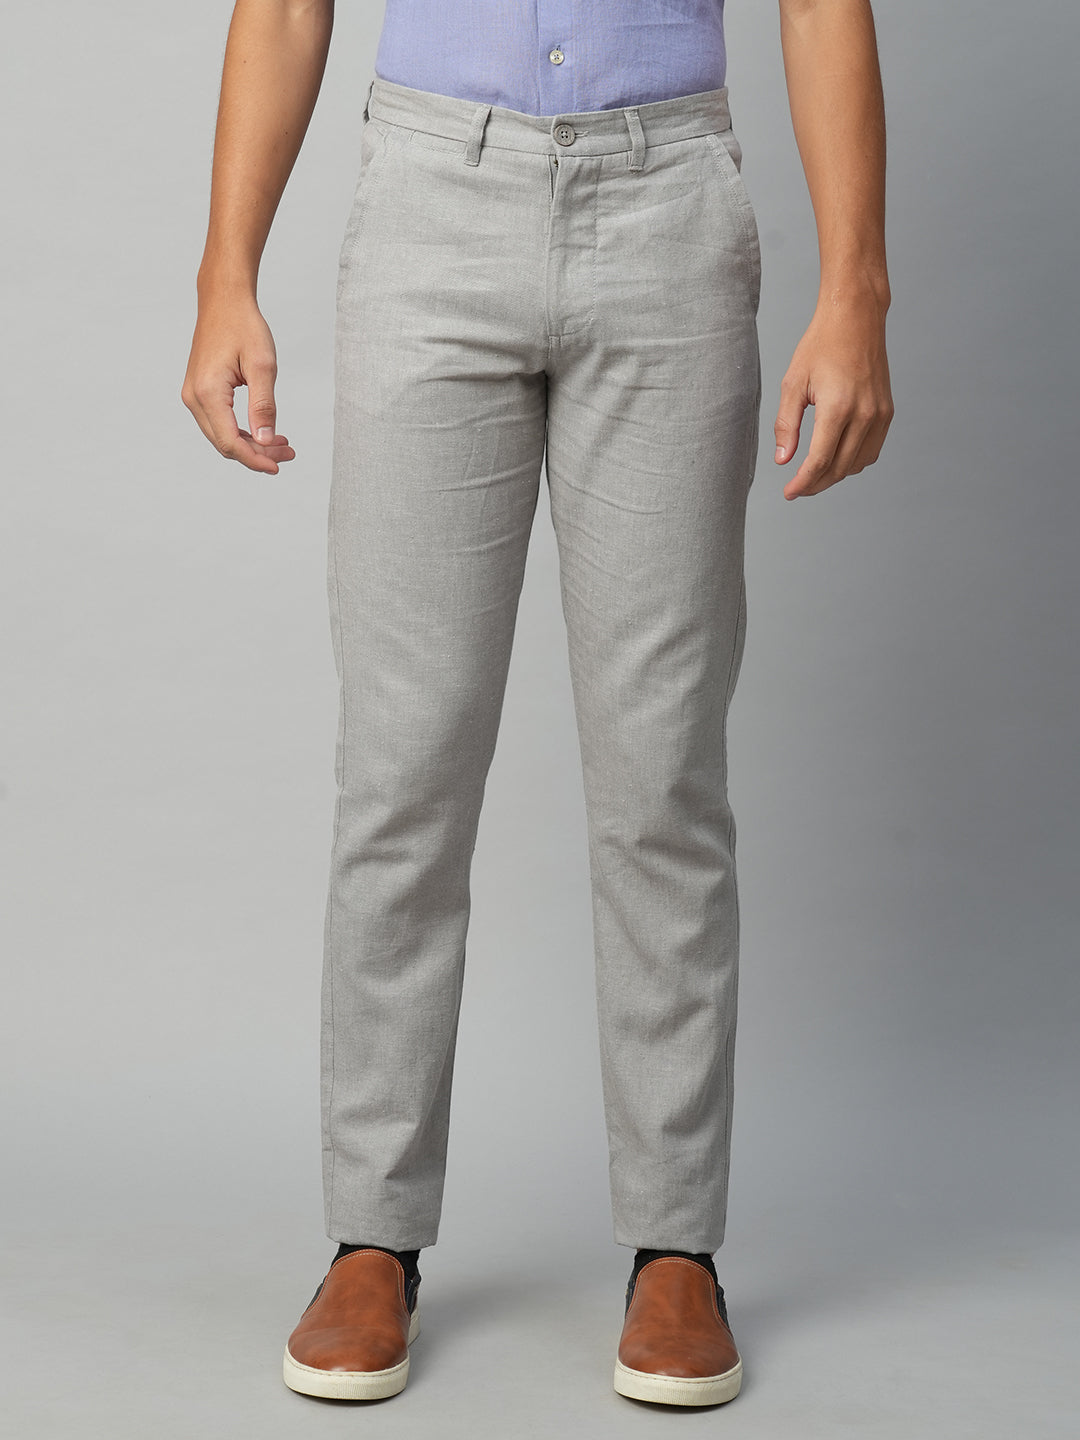 Men's Grey Cotton Linen Slim Fit Pant